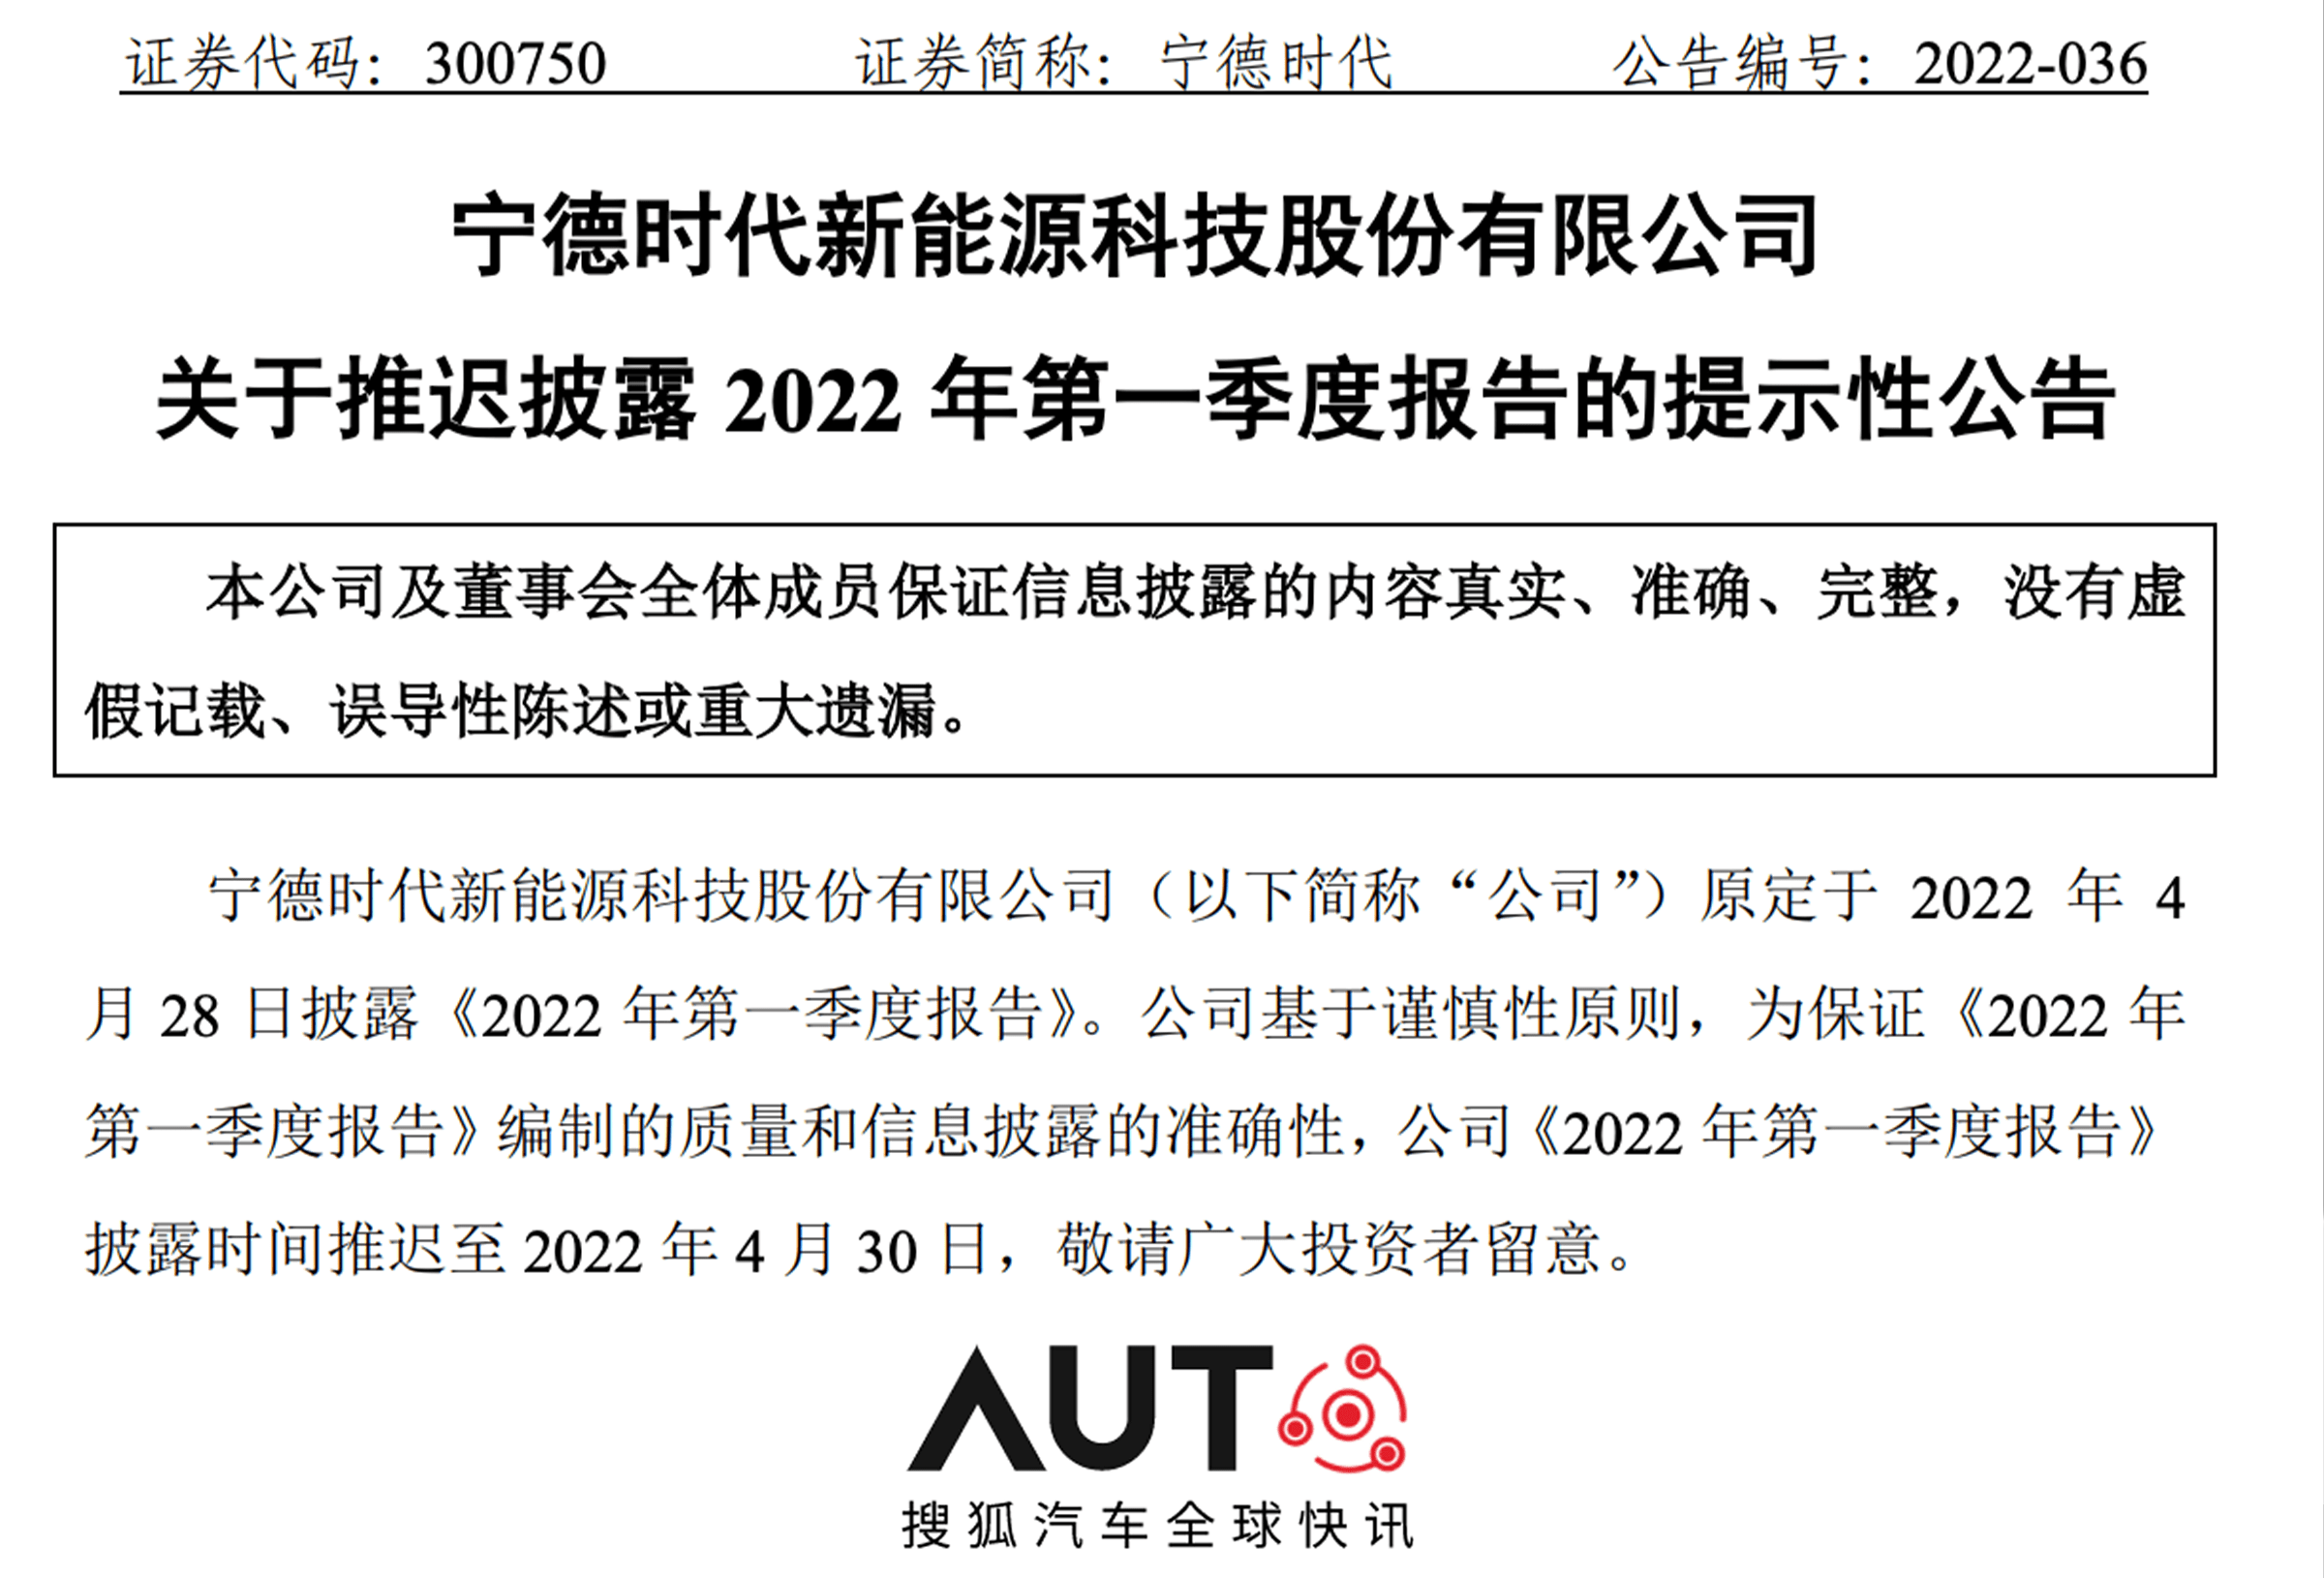 搜狐汽车科技快讯 ｜ 宁德时代推迟2022年第一季度报告发布时间至4月30日